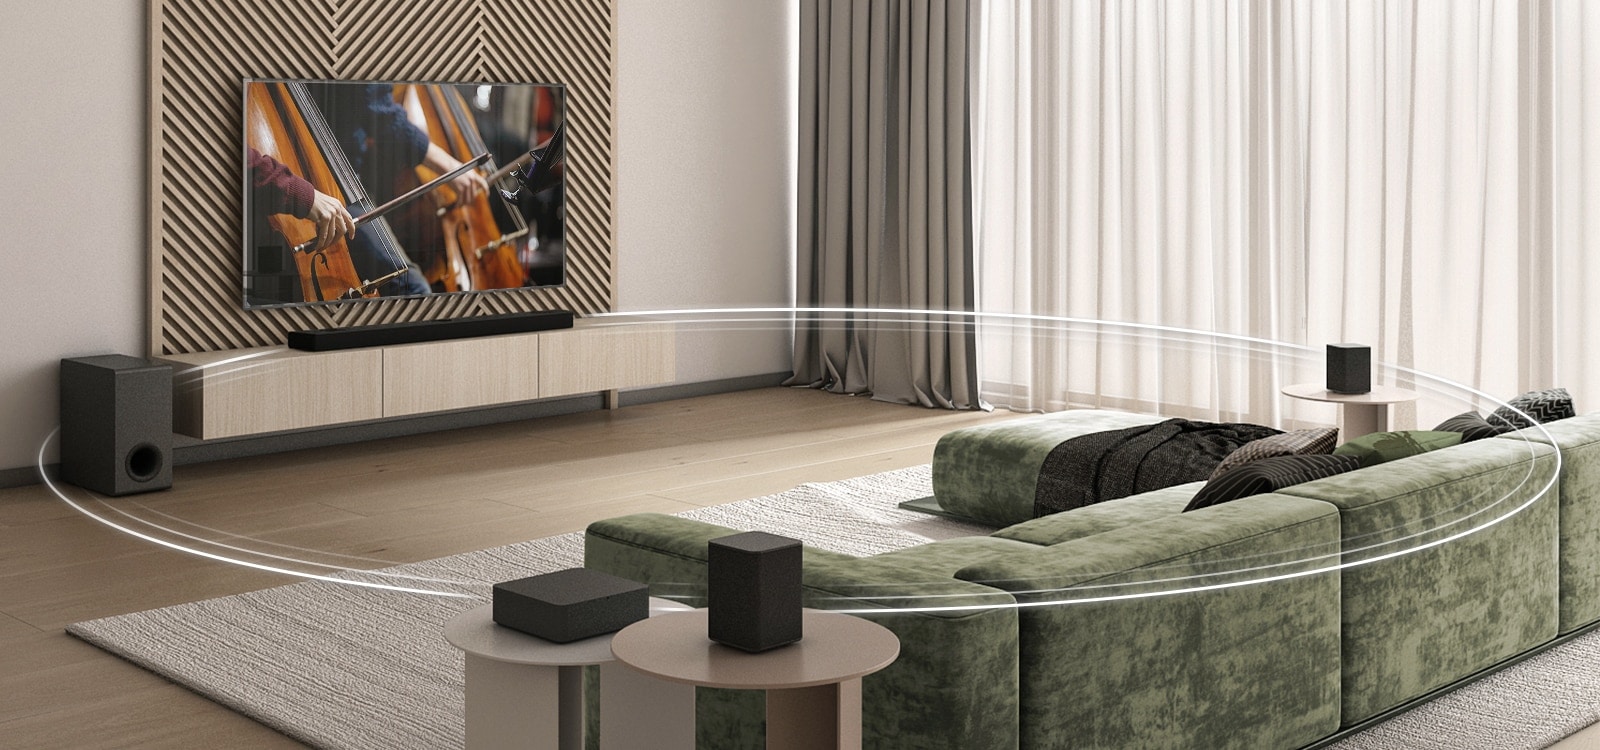 V širokém obývacím pokoji je televizor se dvěma violoncelly na obrazovce, Sound Barem, subwooferem a 2 zadními reproduktory. Kruhová grafika spojuje LG Sound Bar, subwoofer a 2 zadní reproduktory.